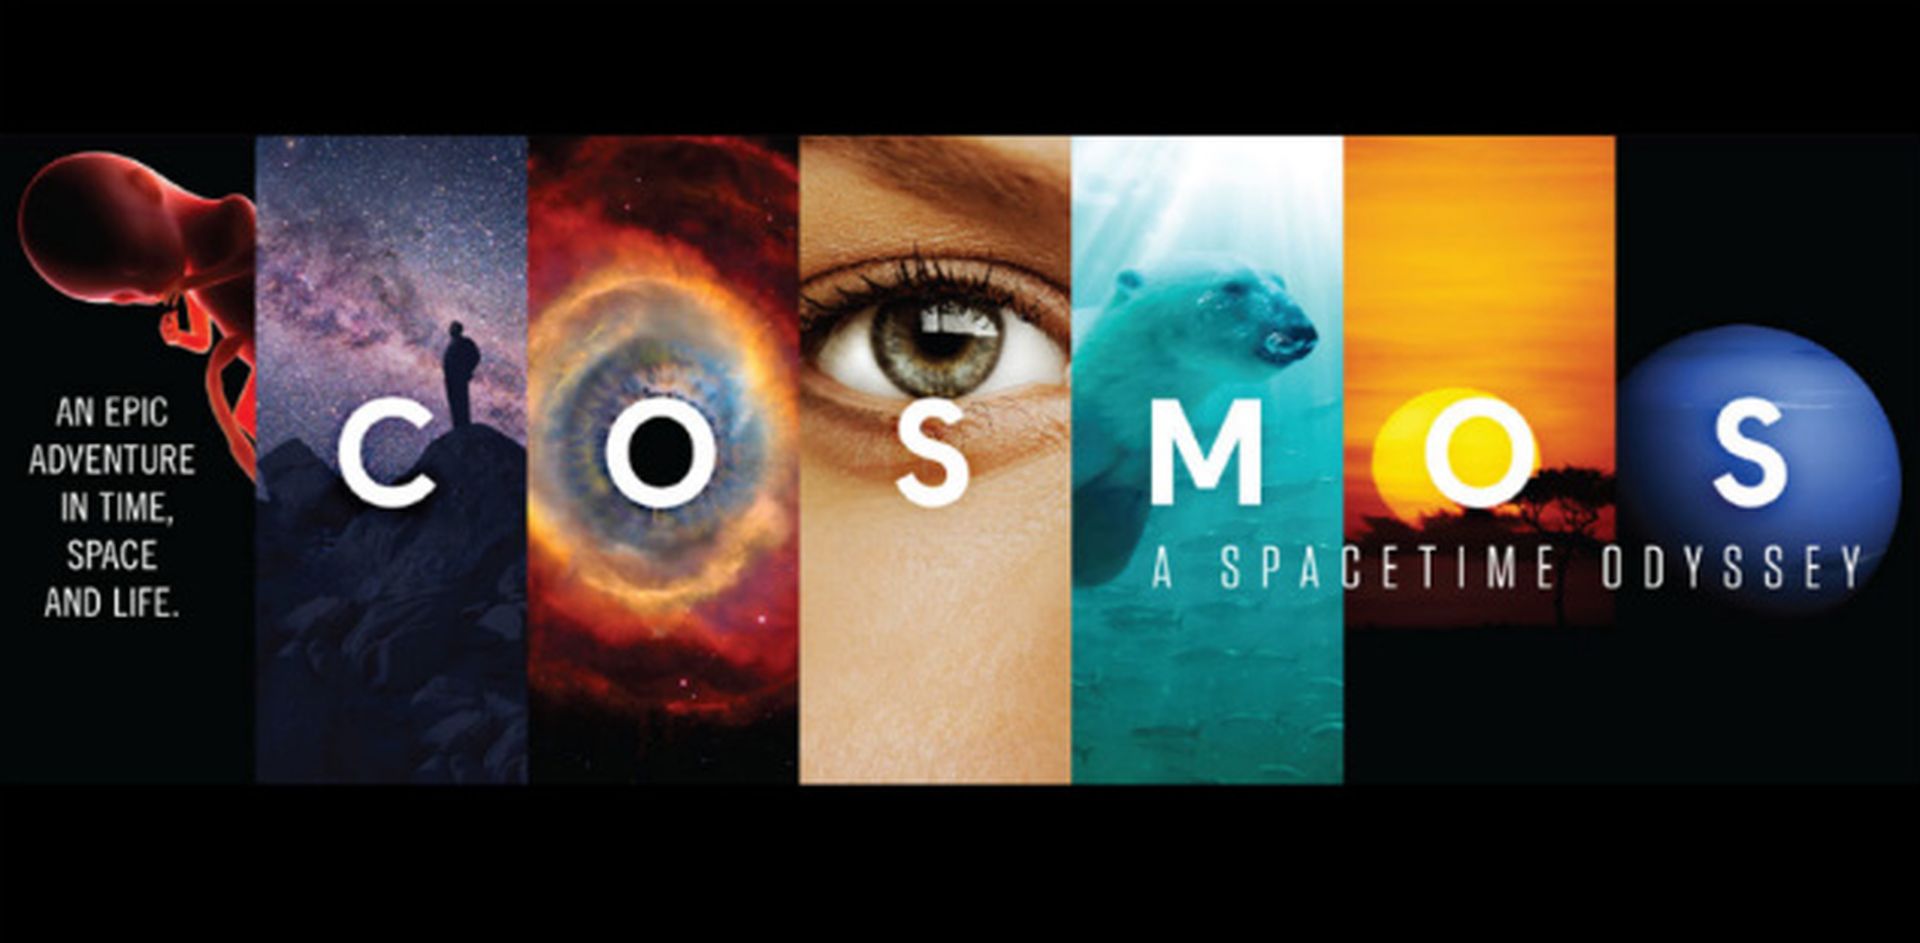 1. Cosmos (1980 / 2014)